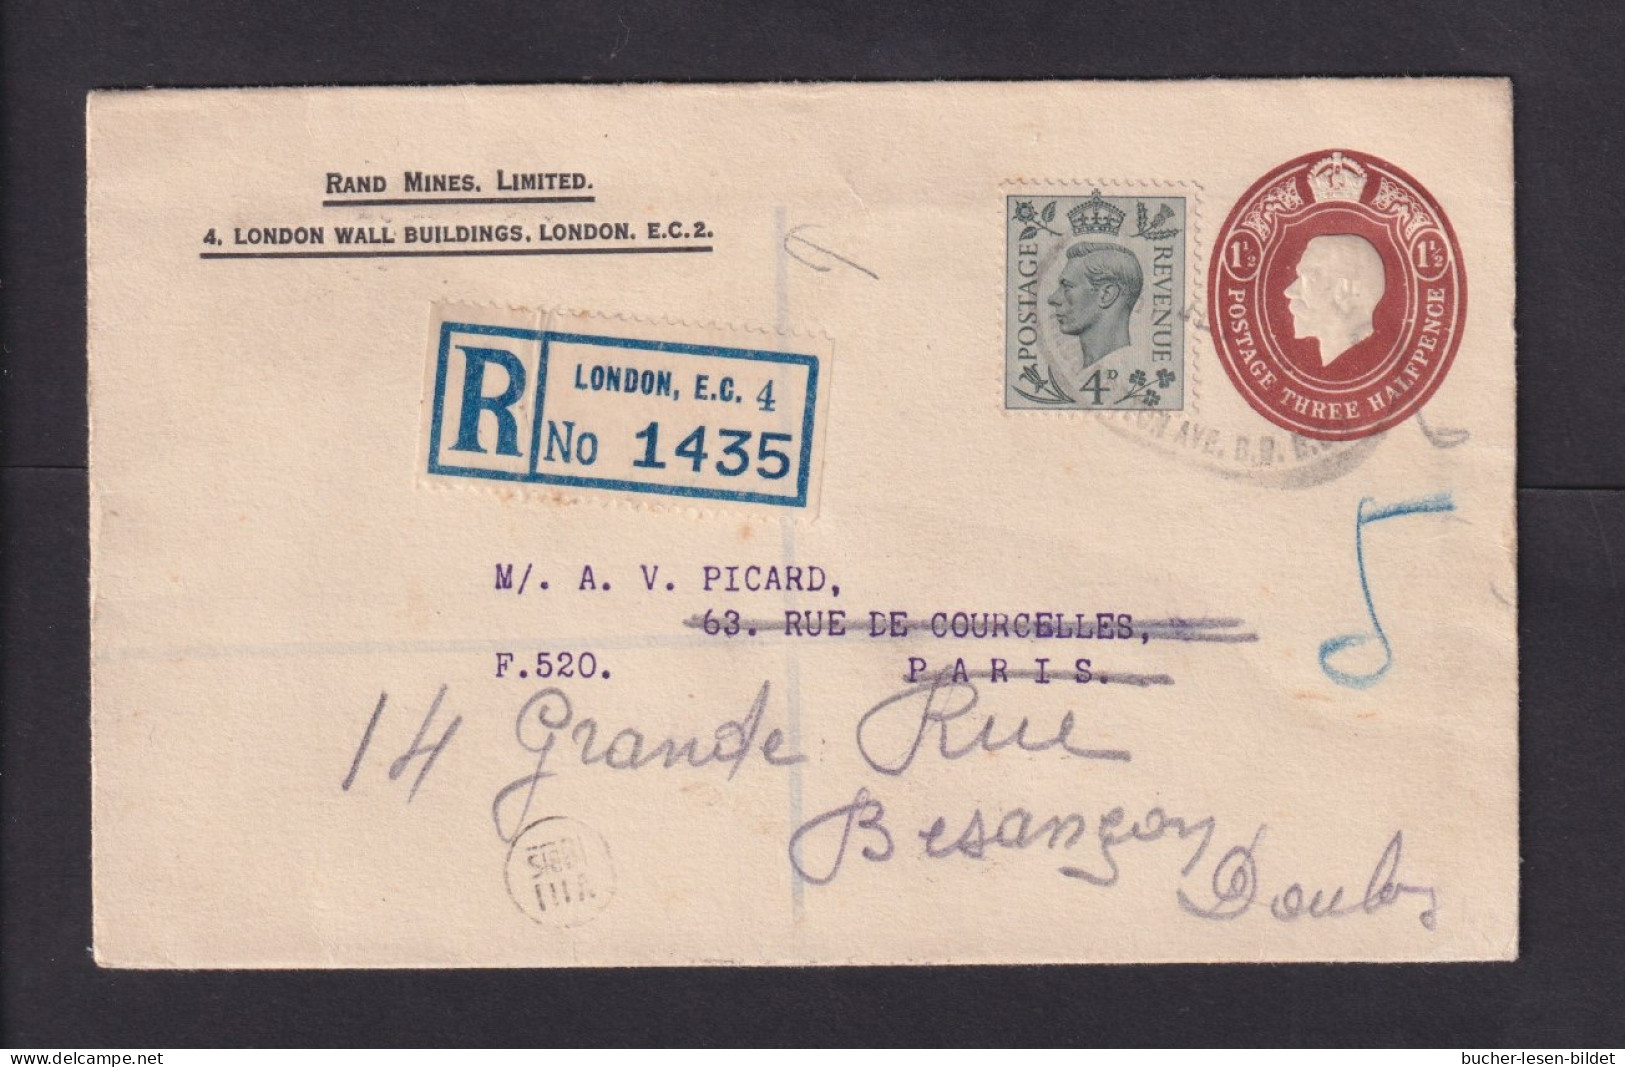 1939 - 1 1/2 P. Privat-Ganzsache Als Einschreiben Ab London Nach Frankreich, Dort Nachgesandt - Briefe U. Dokumente